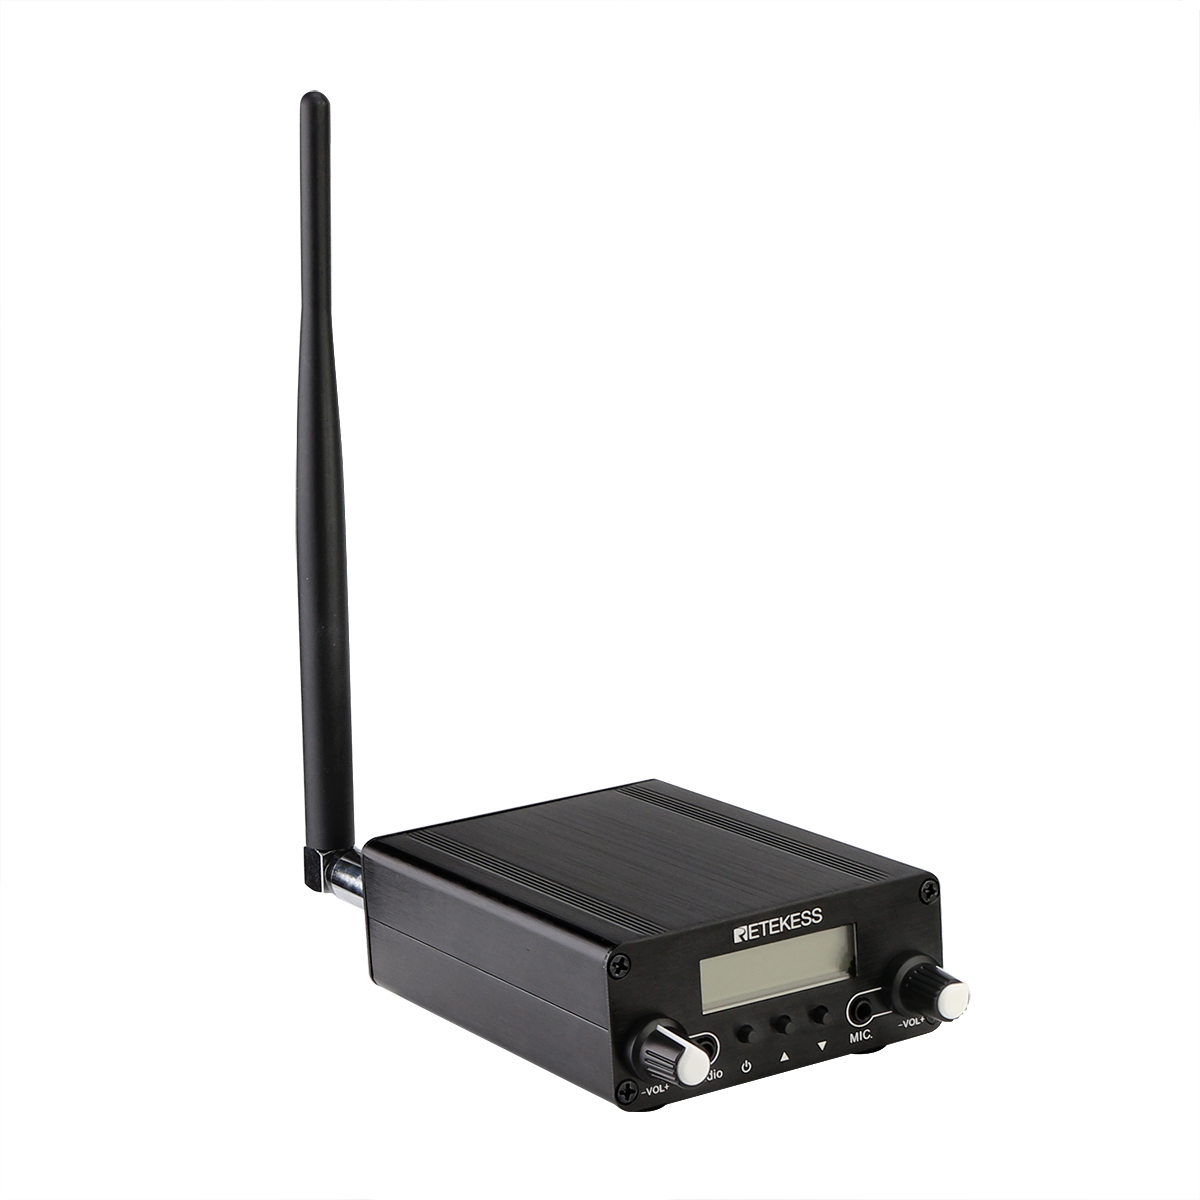 Retekess-TR508-FM-Transmitter-For-Drive-in-Church-FM-Transmitter-Wireless-Broadcast-Stereo-Station-L-1681579-5